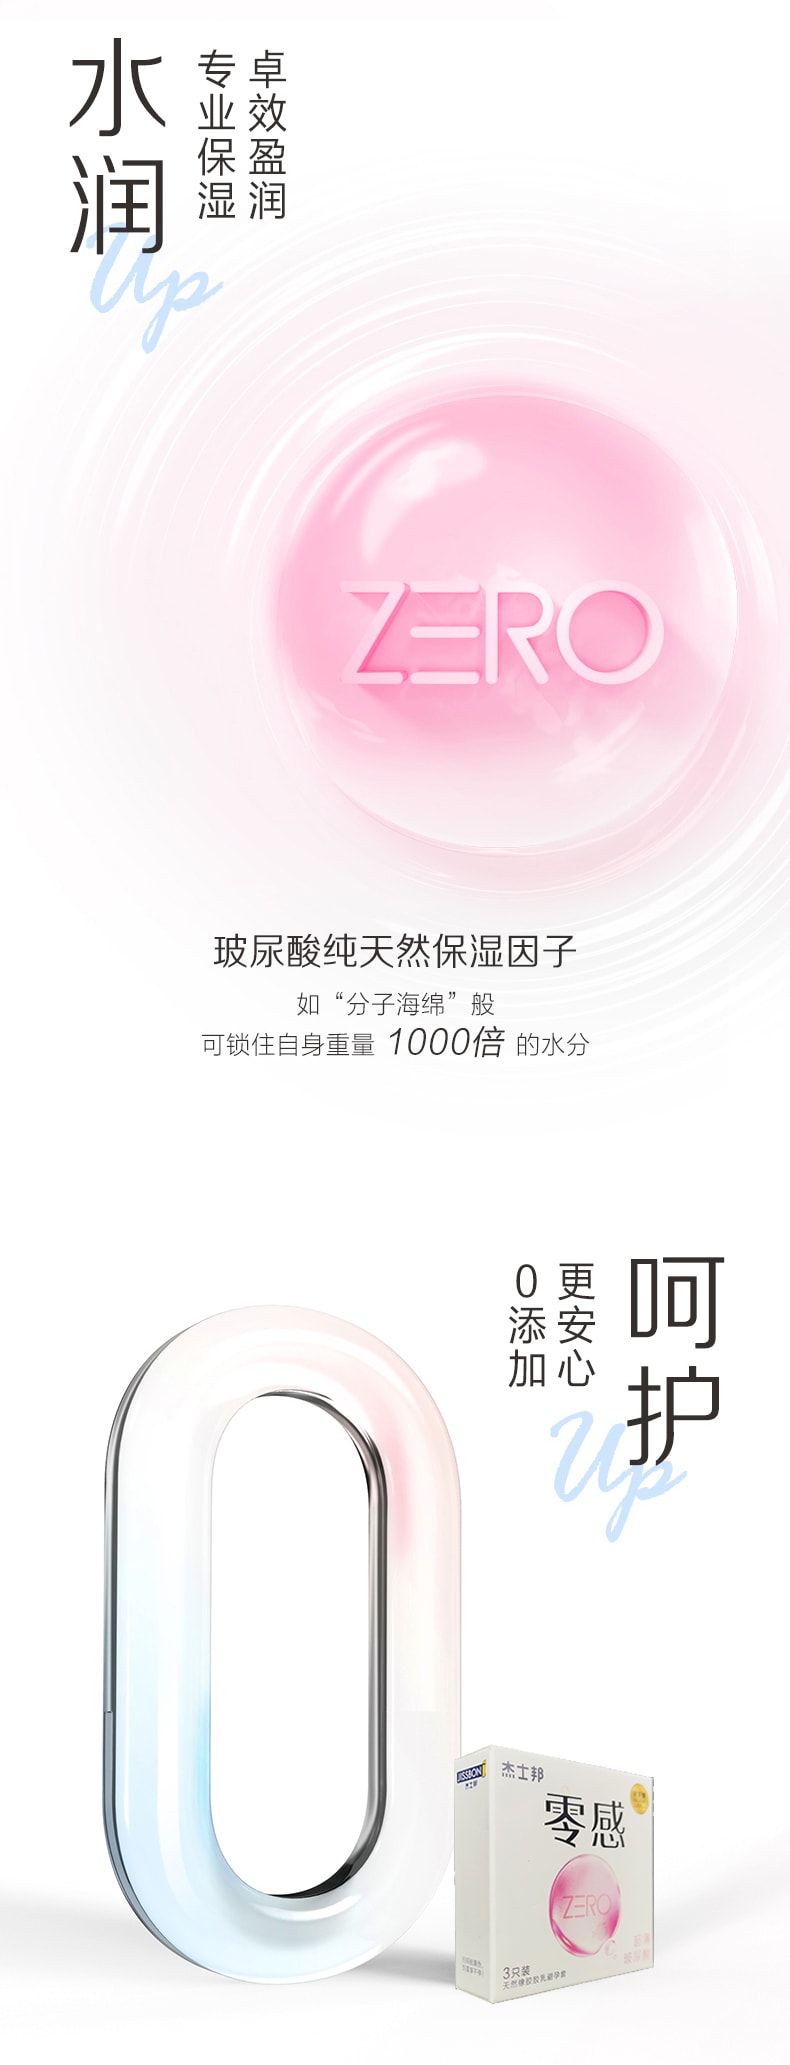 杰士邦零感超薄玻尿酸  ZERO零感安全套 计生用品 避孕套3只装